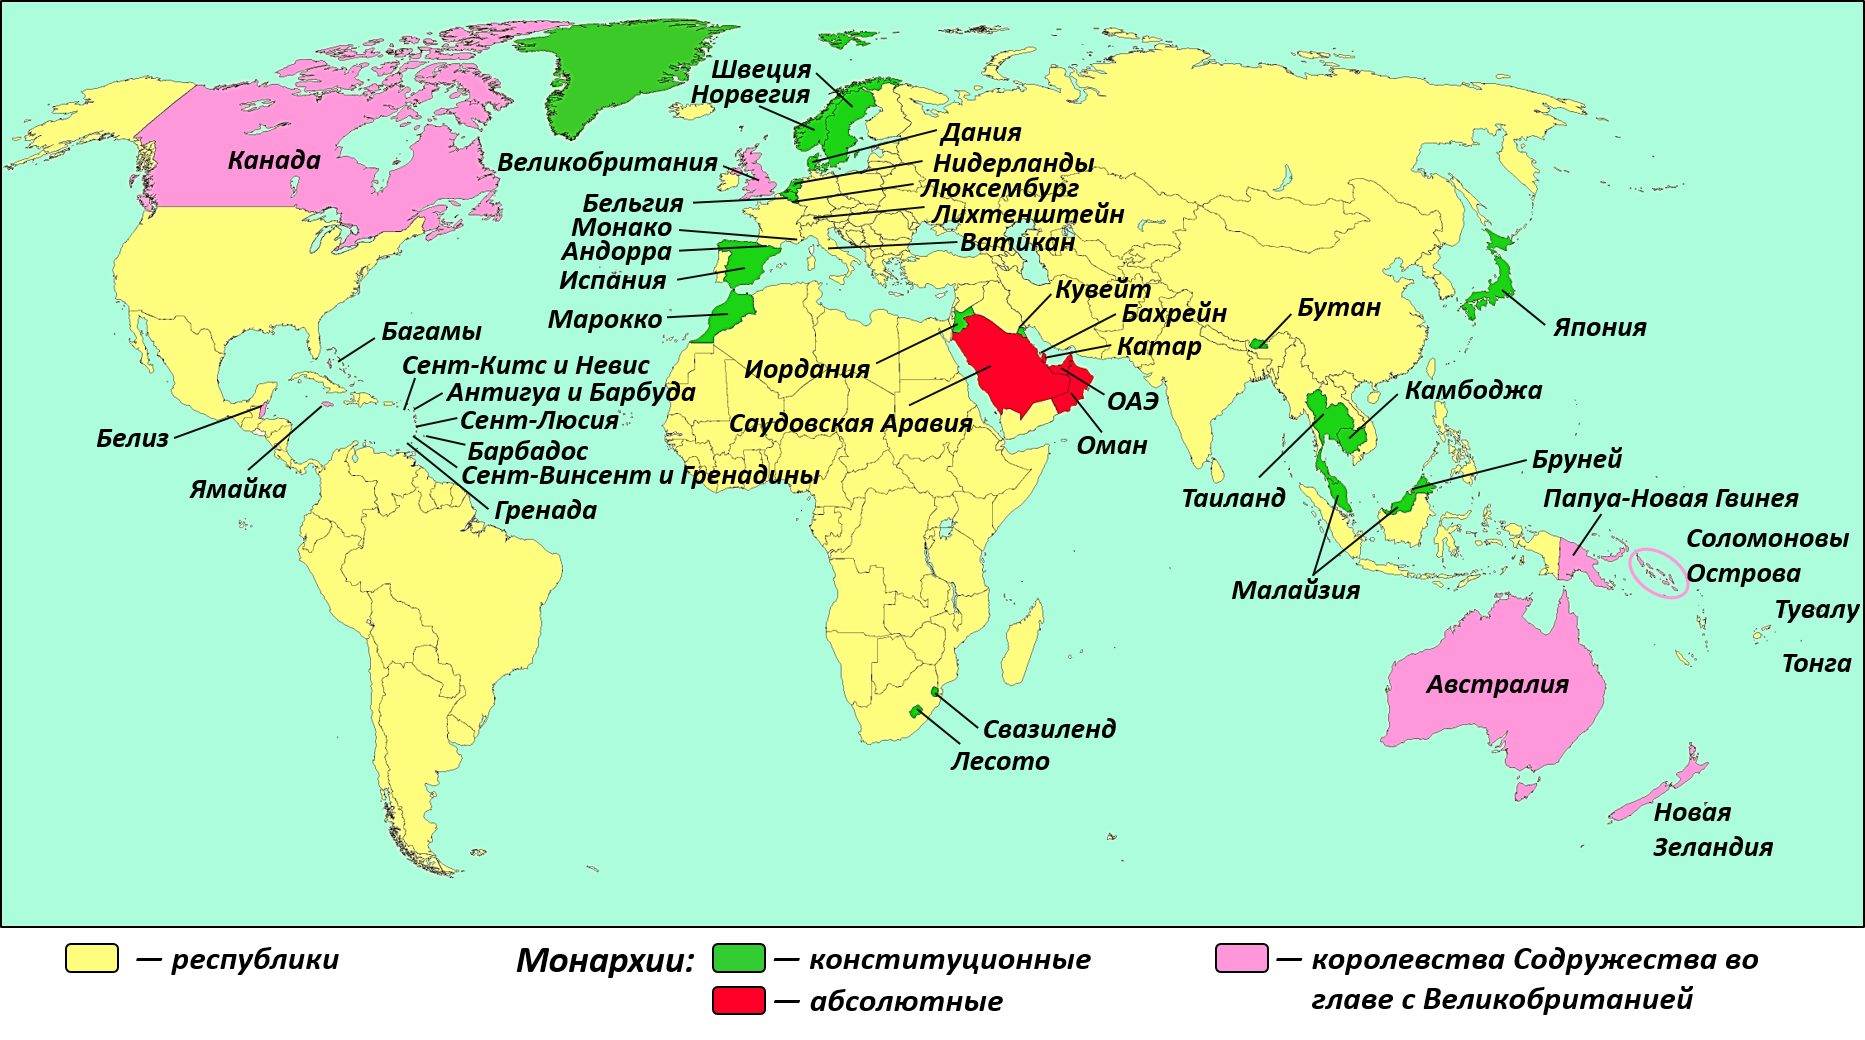 Западный мир какие страны. Государства с республиканской формой правления Европы на карте.